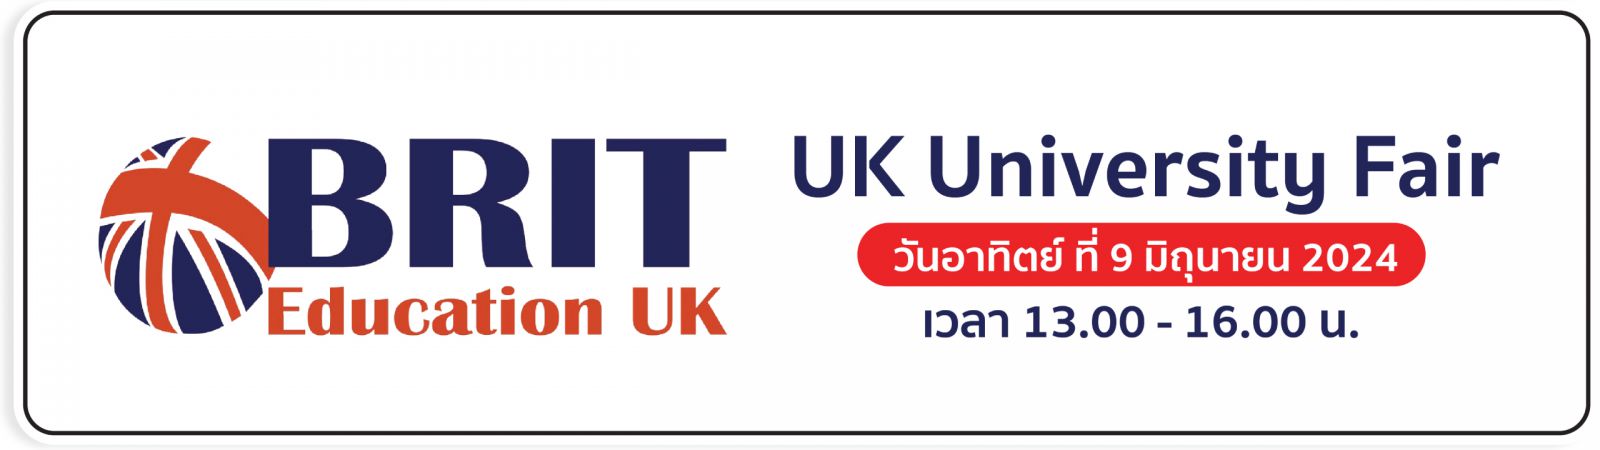 งานแนะแนวเรียนต่อ UK 2024 | UK University Fair in Bangkok 2024